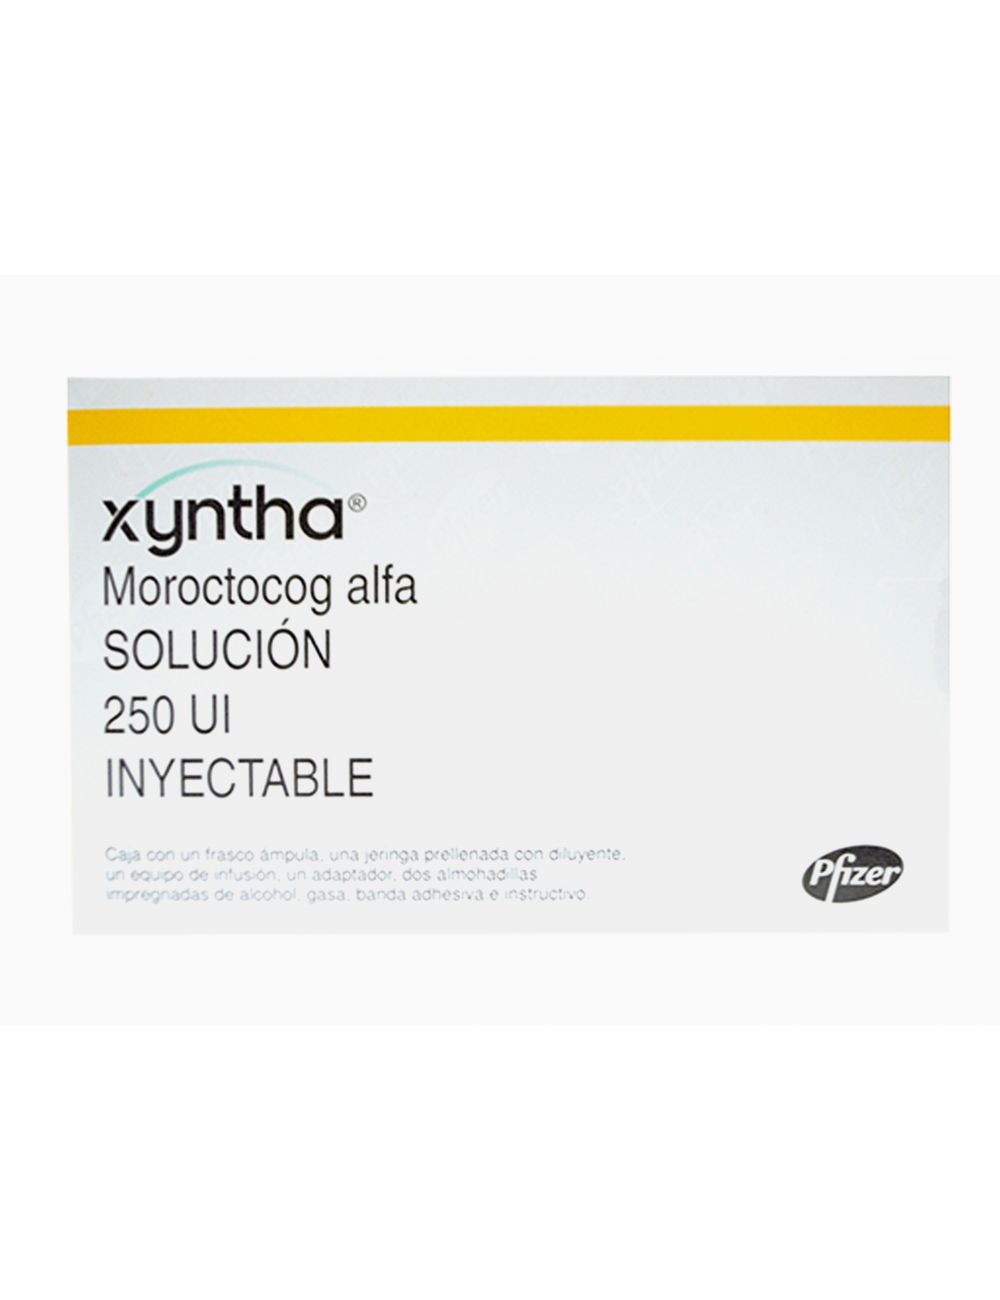 Xyntha Solucion Inyectable Que Es Y Para Que Sirve Xyntha: ¿Qué Es Y Para Qué Sirve?